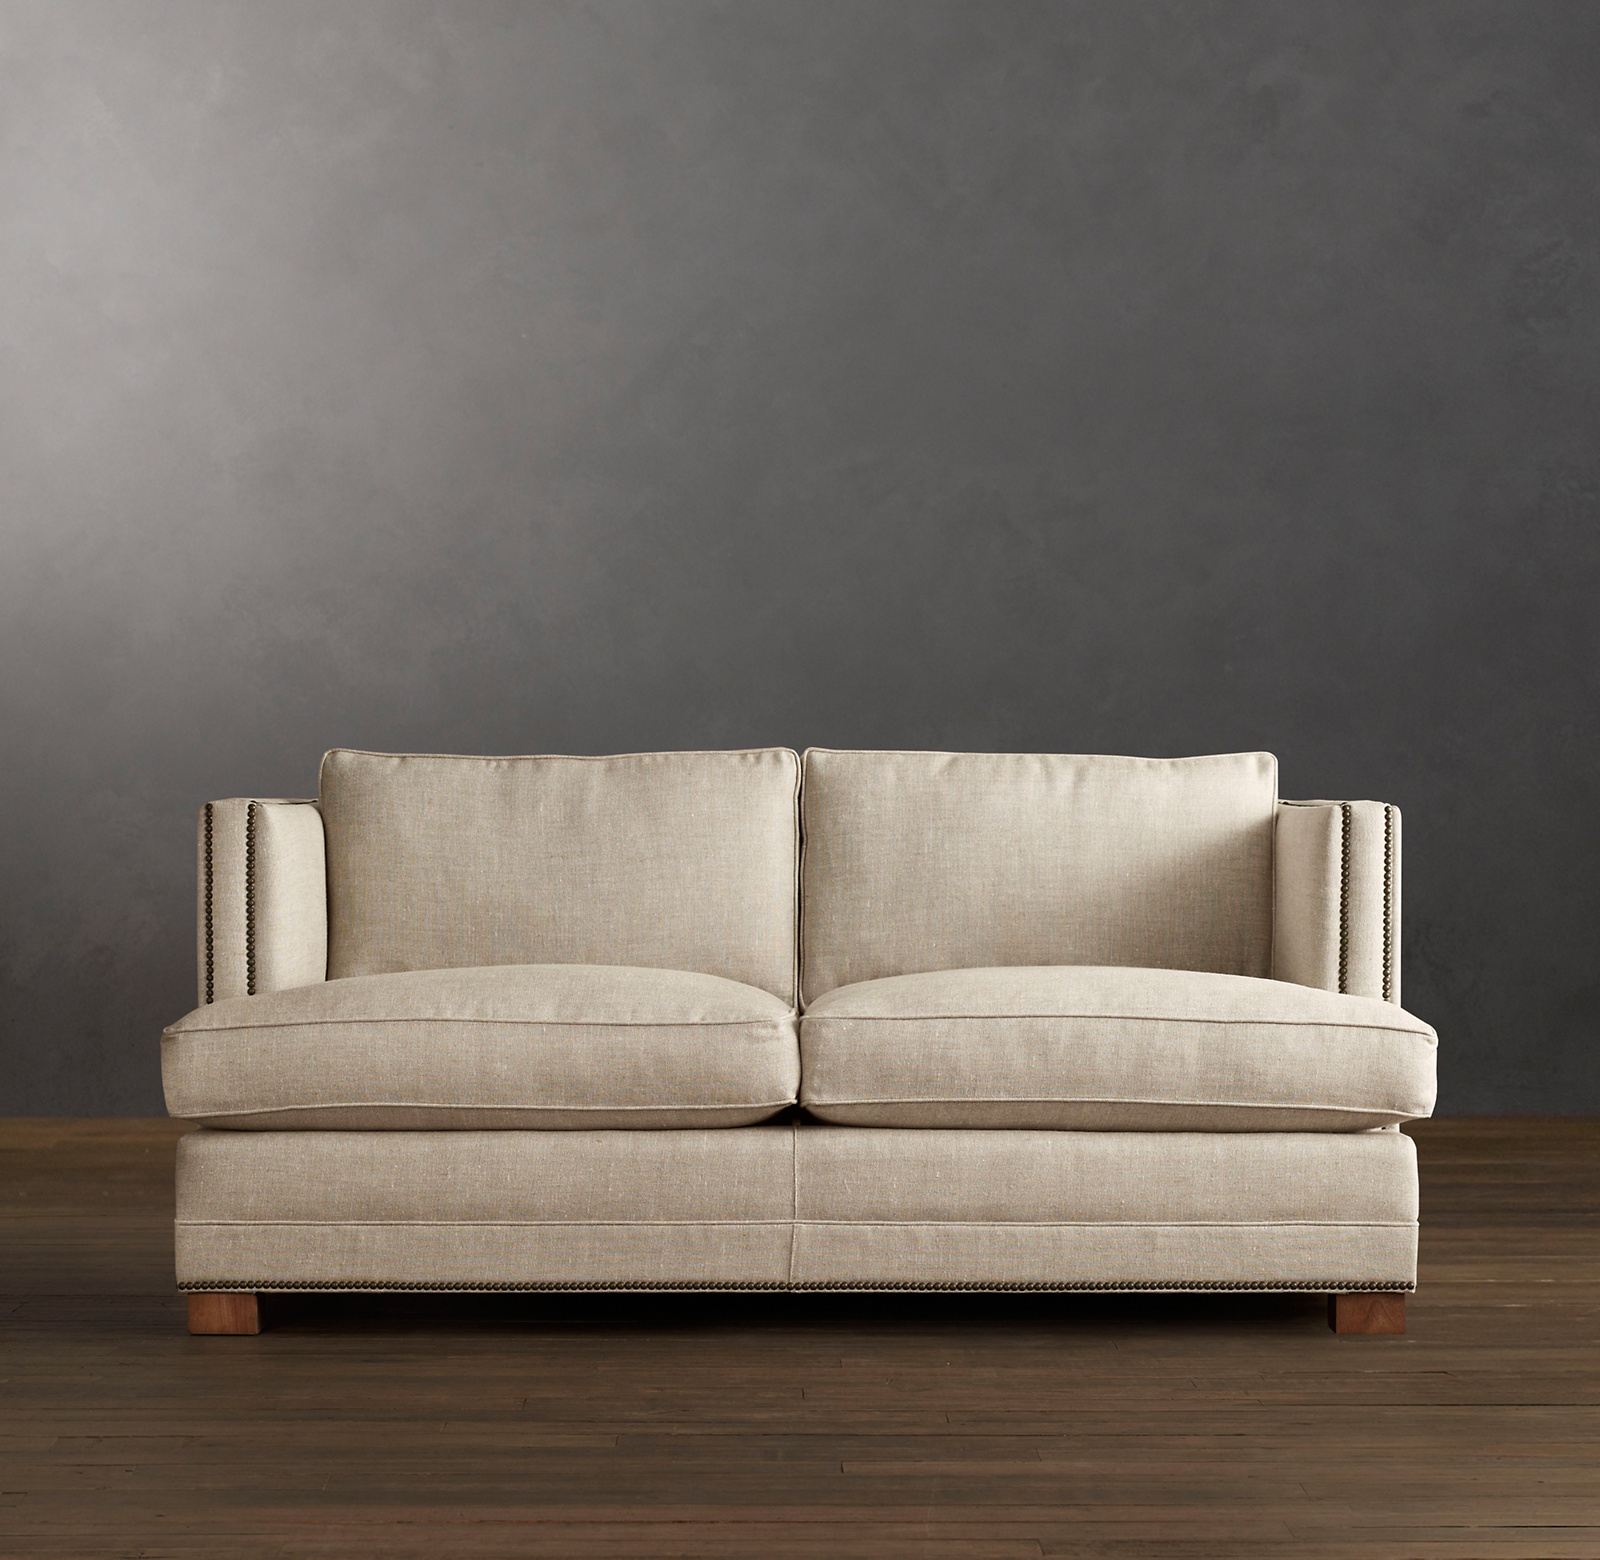 6 Easton Upholstered Sofa Rh